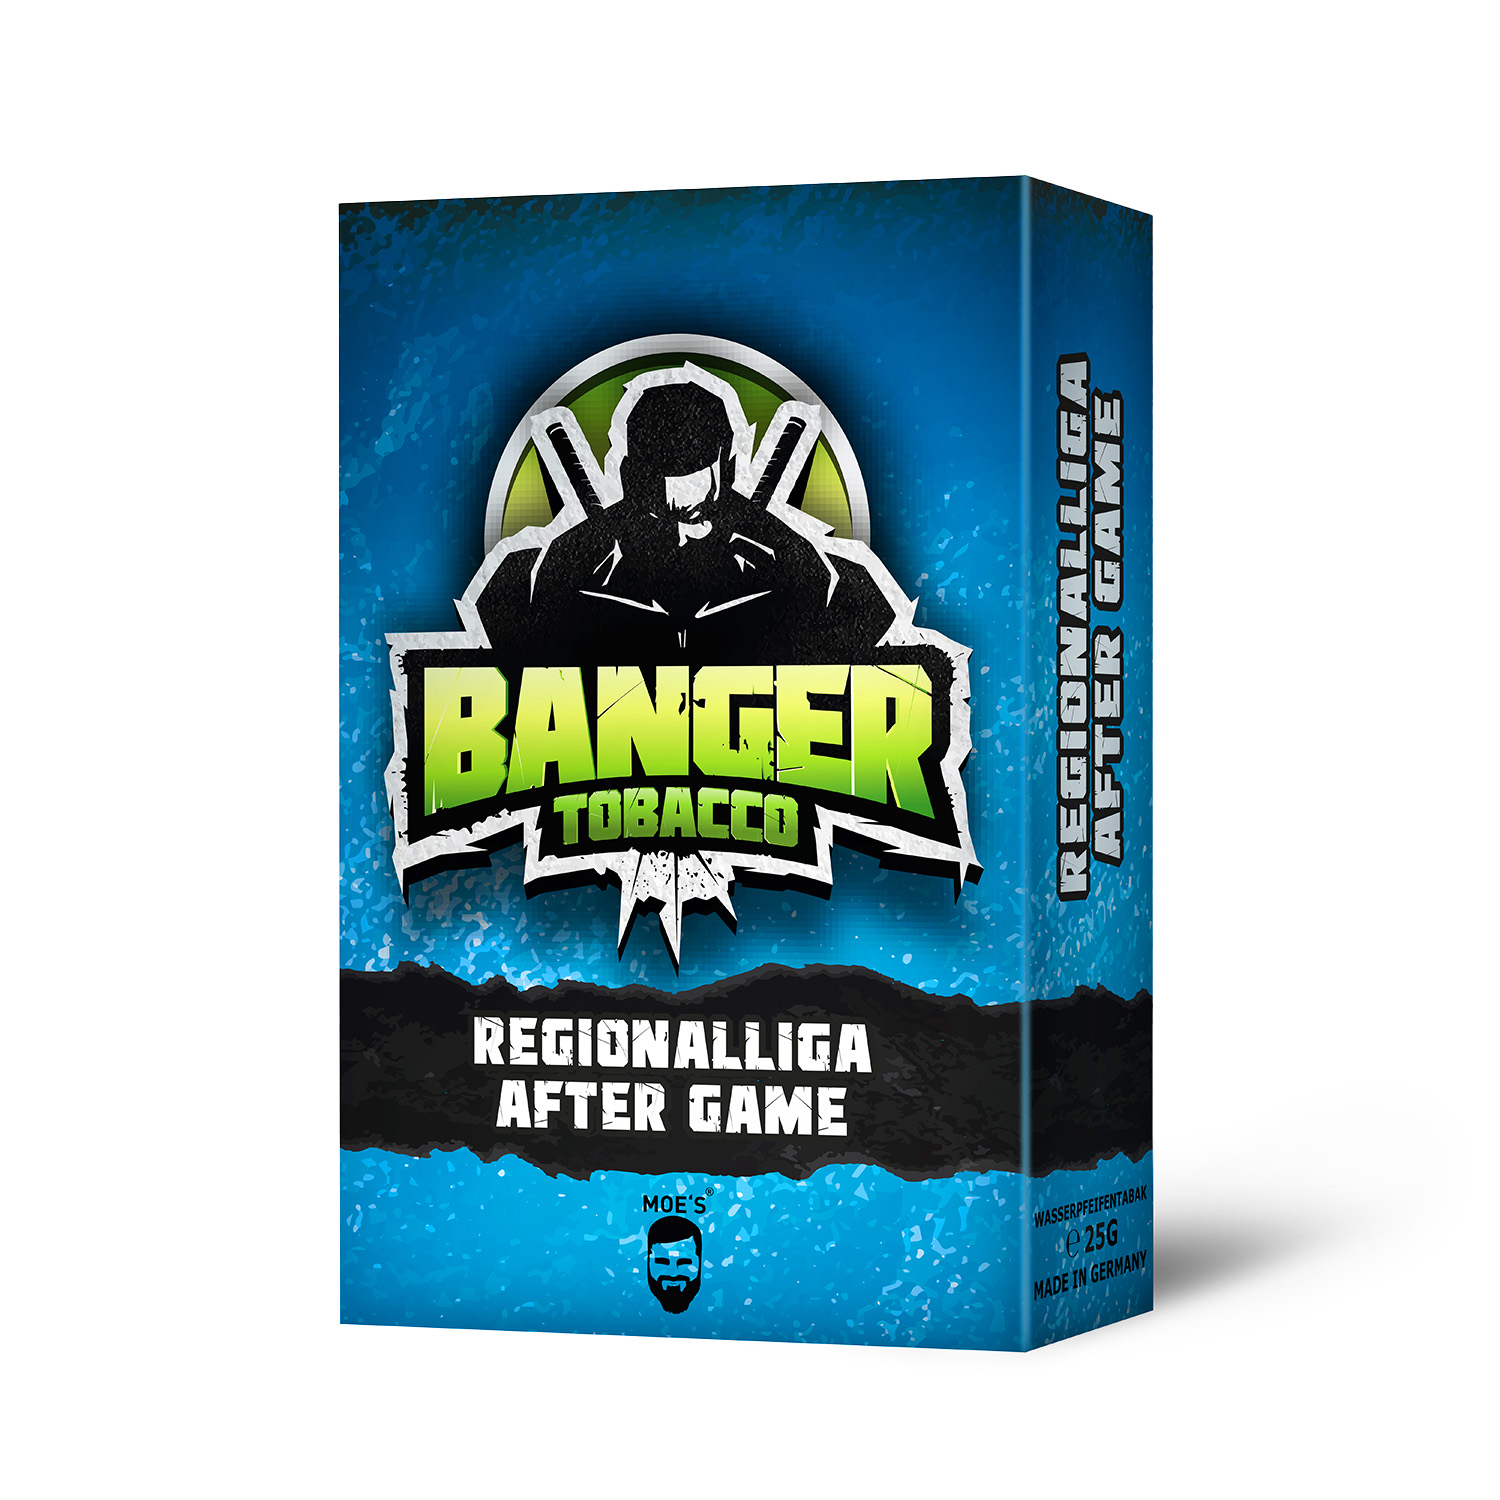 BANGER - REGIONALLIGA AFTER GAME